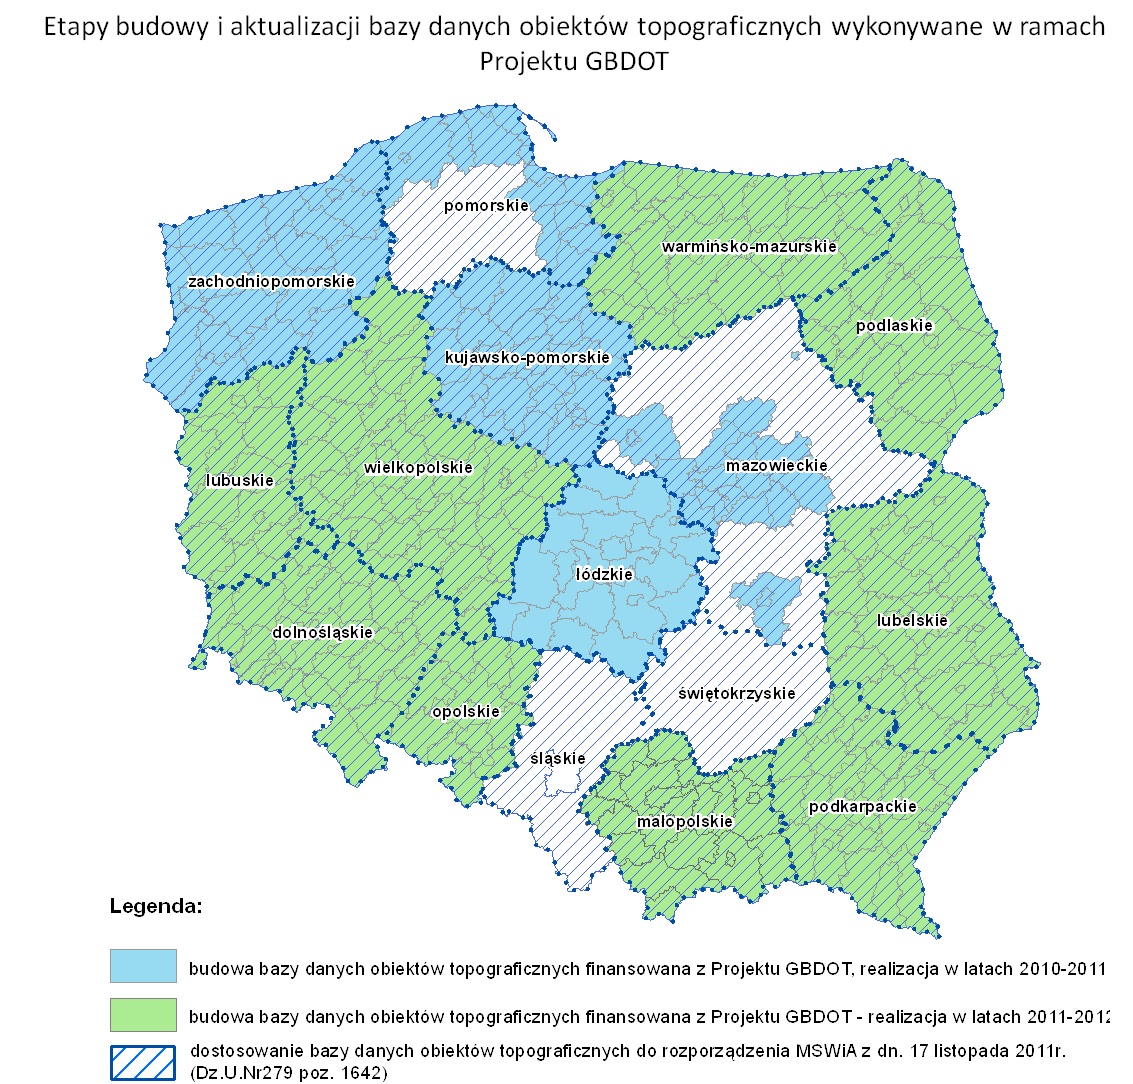 Mapa Polski z zaznaczonymi obszarami województw, w których wykonywane były prace w etapach: 2010-2011 kolor błekitny, 2011 - 2013 kolor zielony oraz biały kreskowany na którym jedynie dostowano istniejące bazy do wymogów aktulanych przepisów